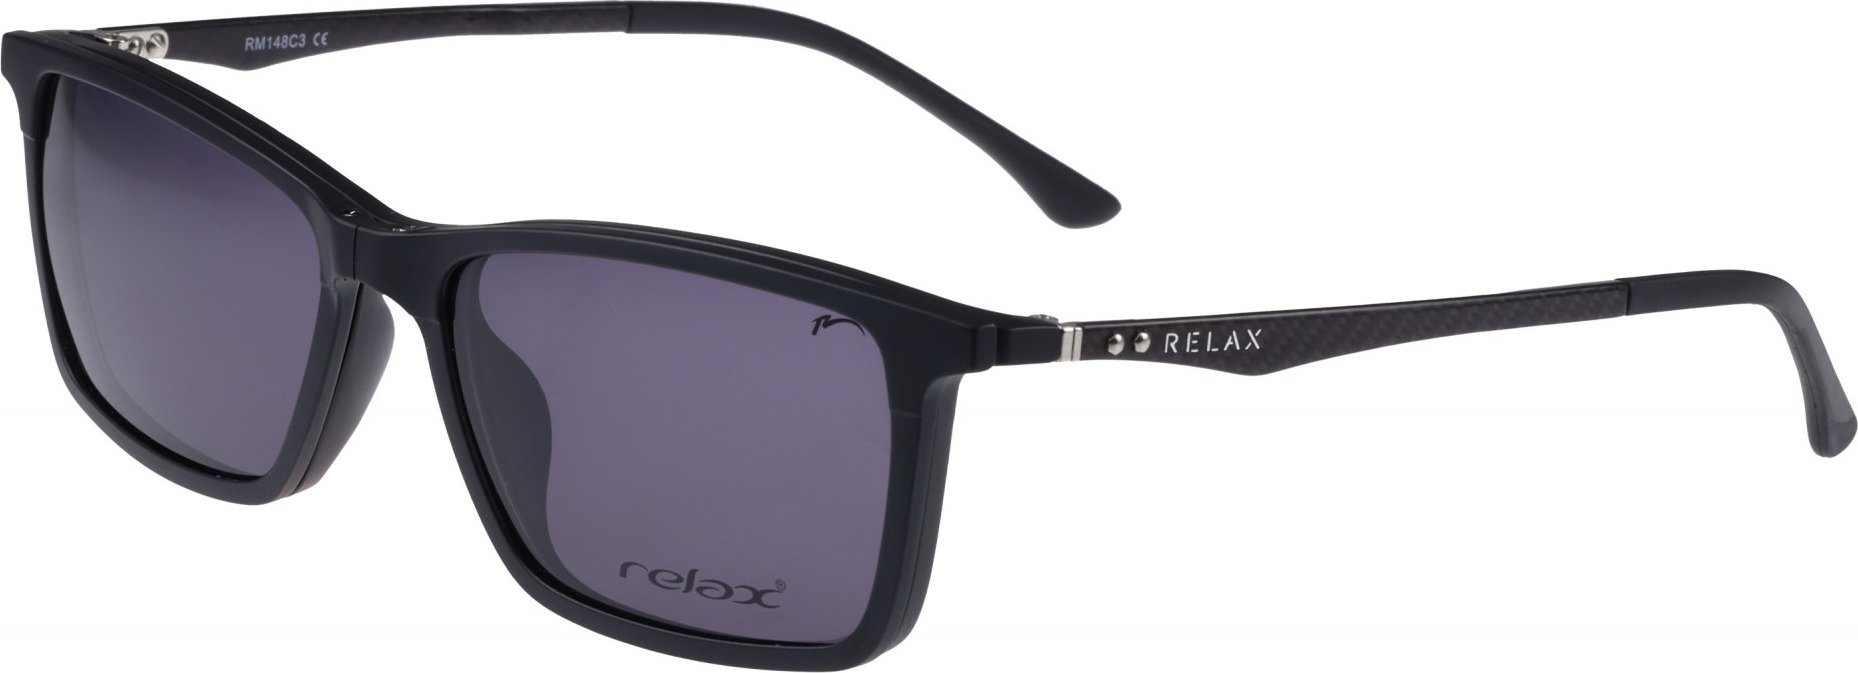 Náhradní dioptrický klip k brýlím RELAX Orly RM148C3clip